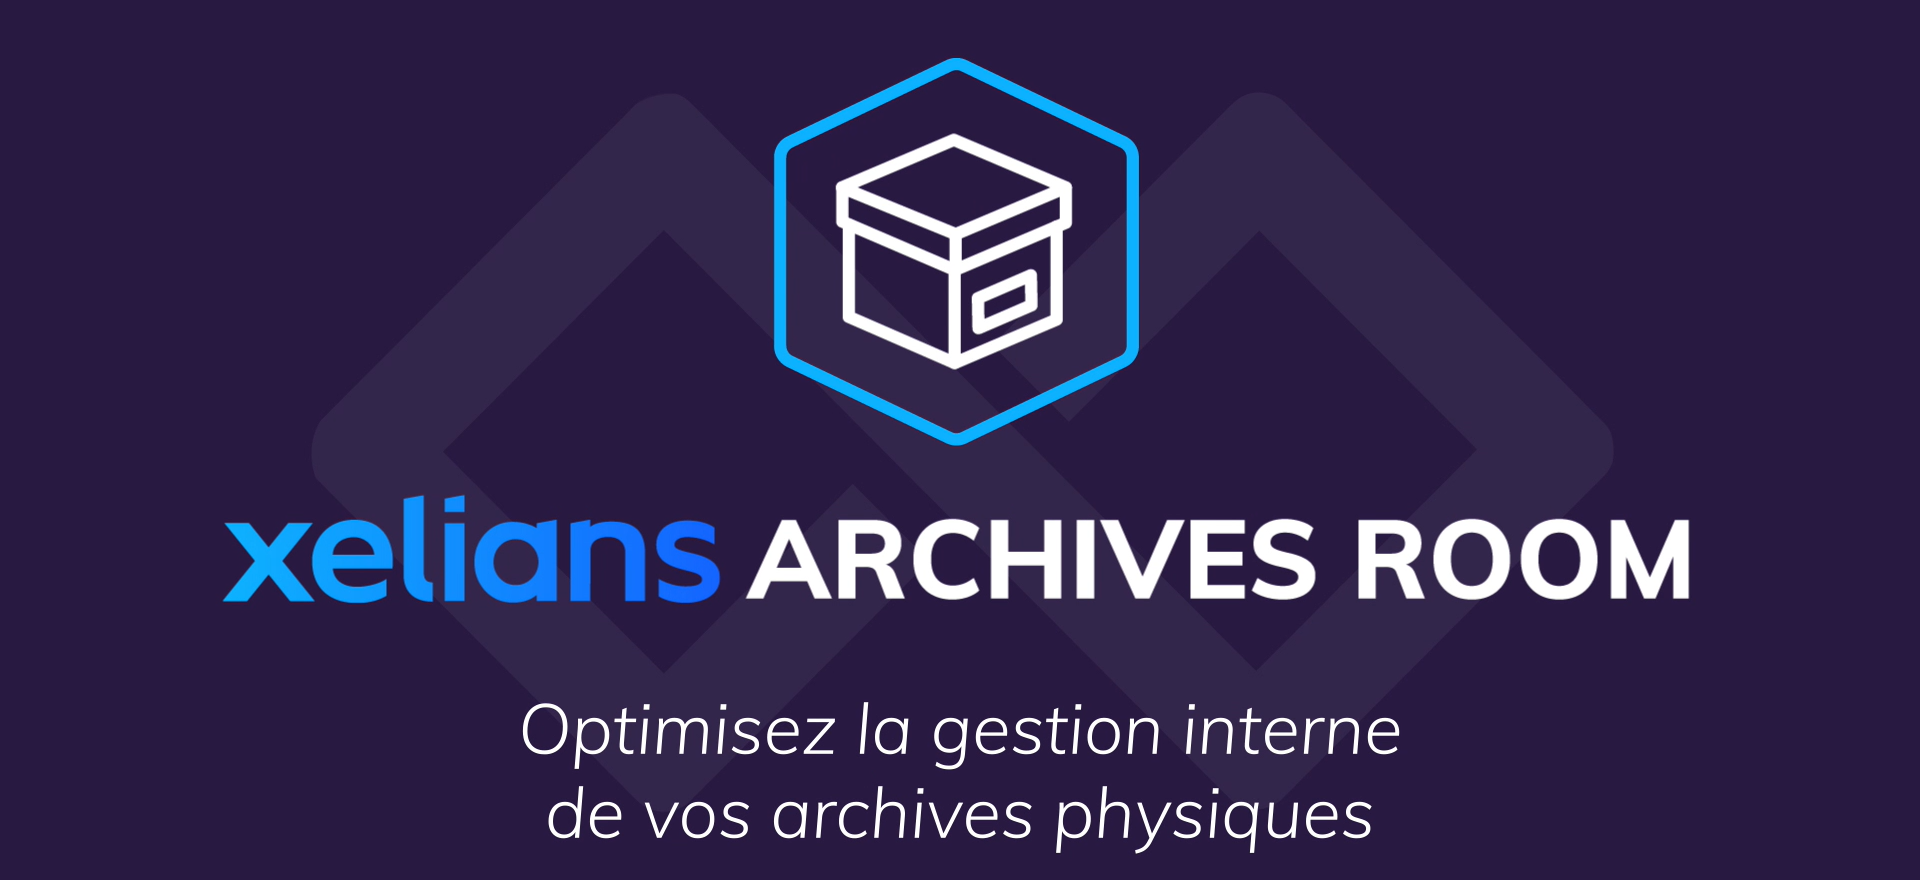 Xelians Archives Room : optimiser la gestion interne de vos archives physiques